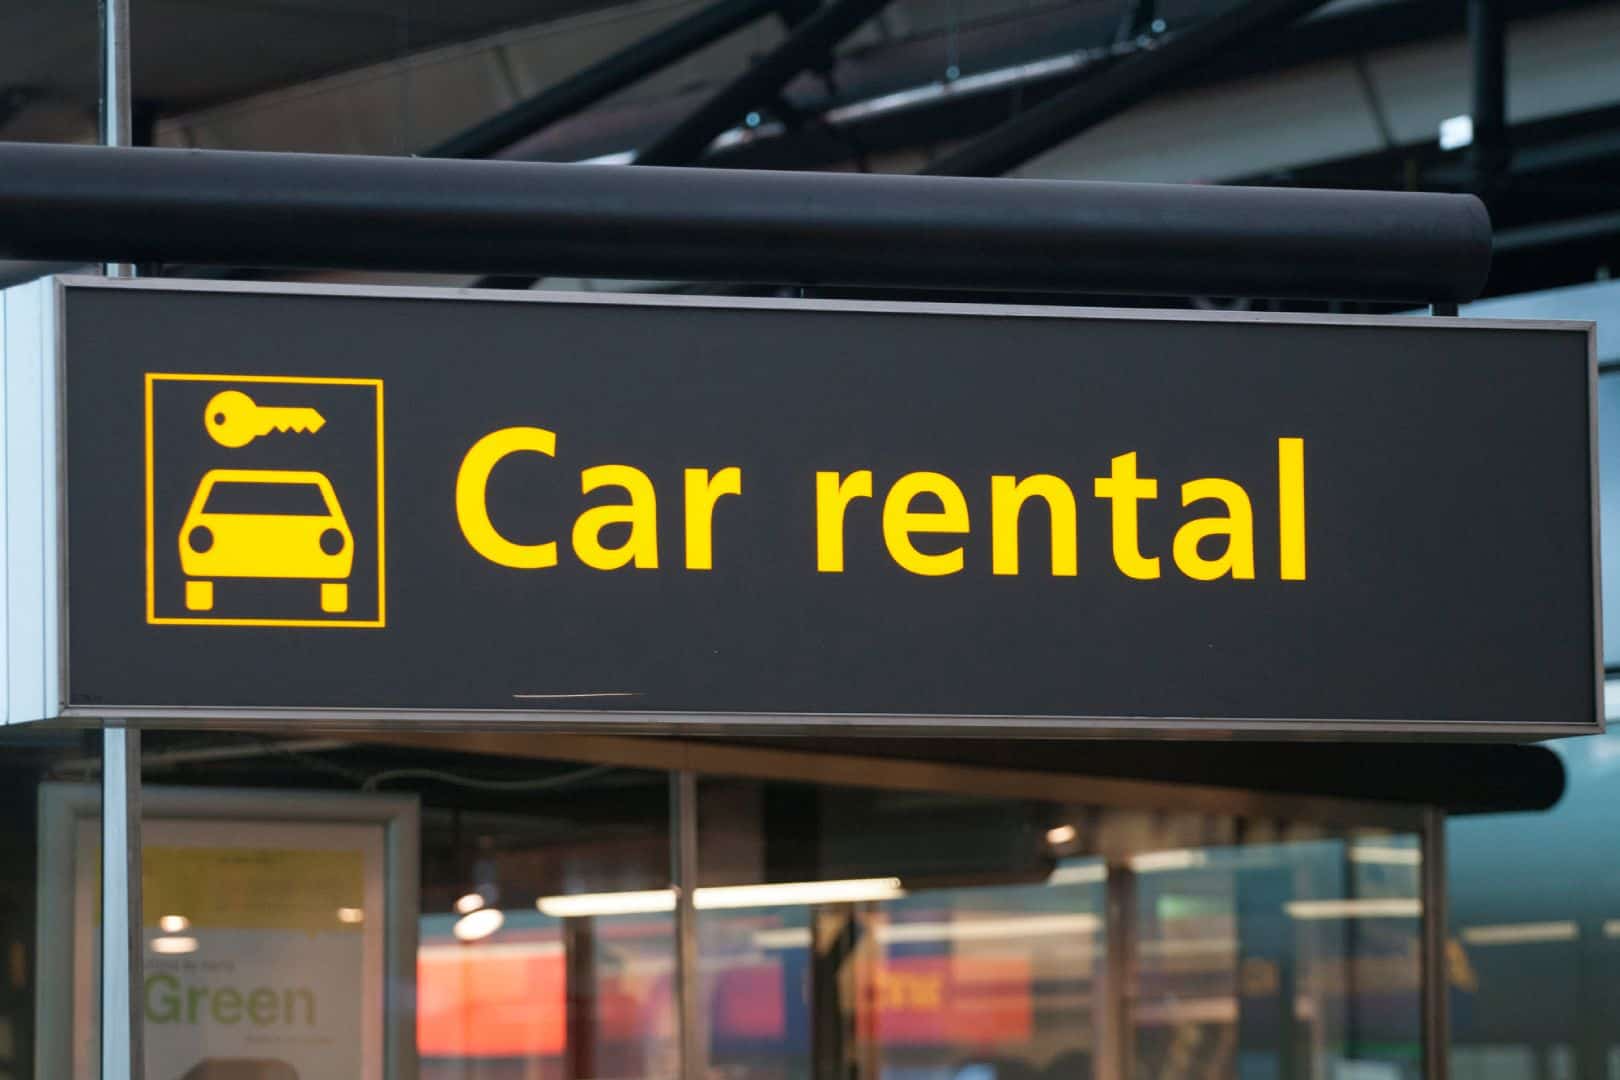 An airport car rental sign.